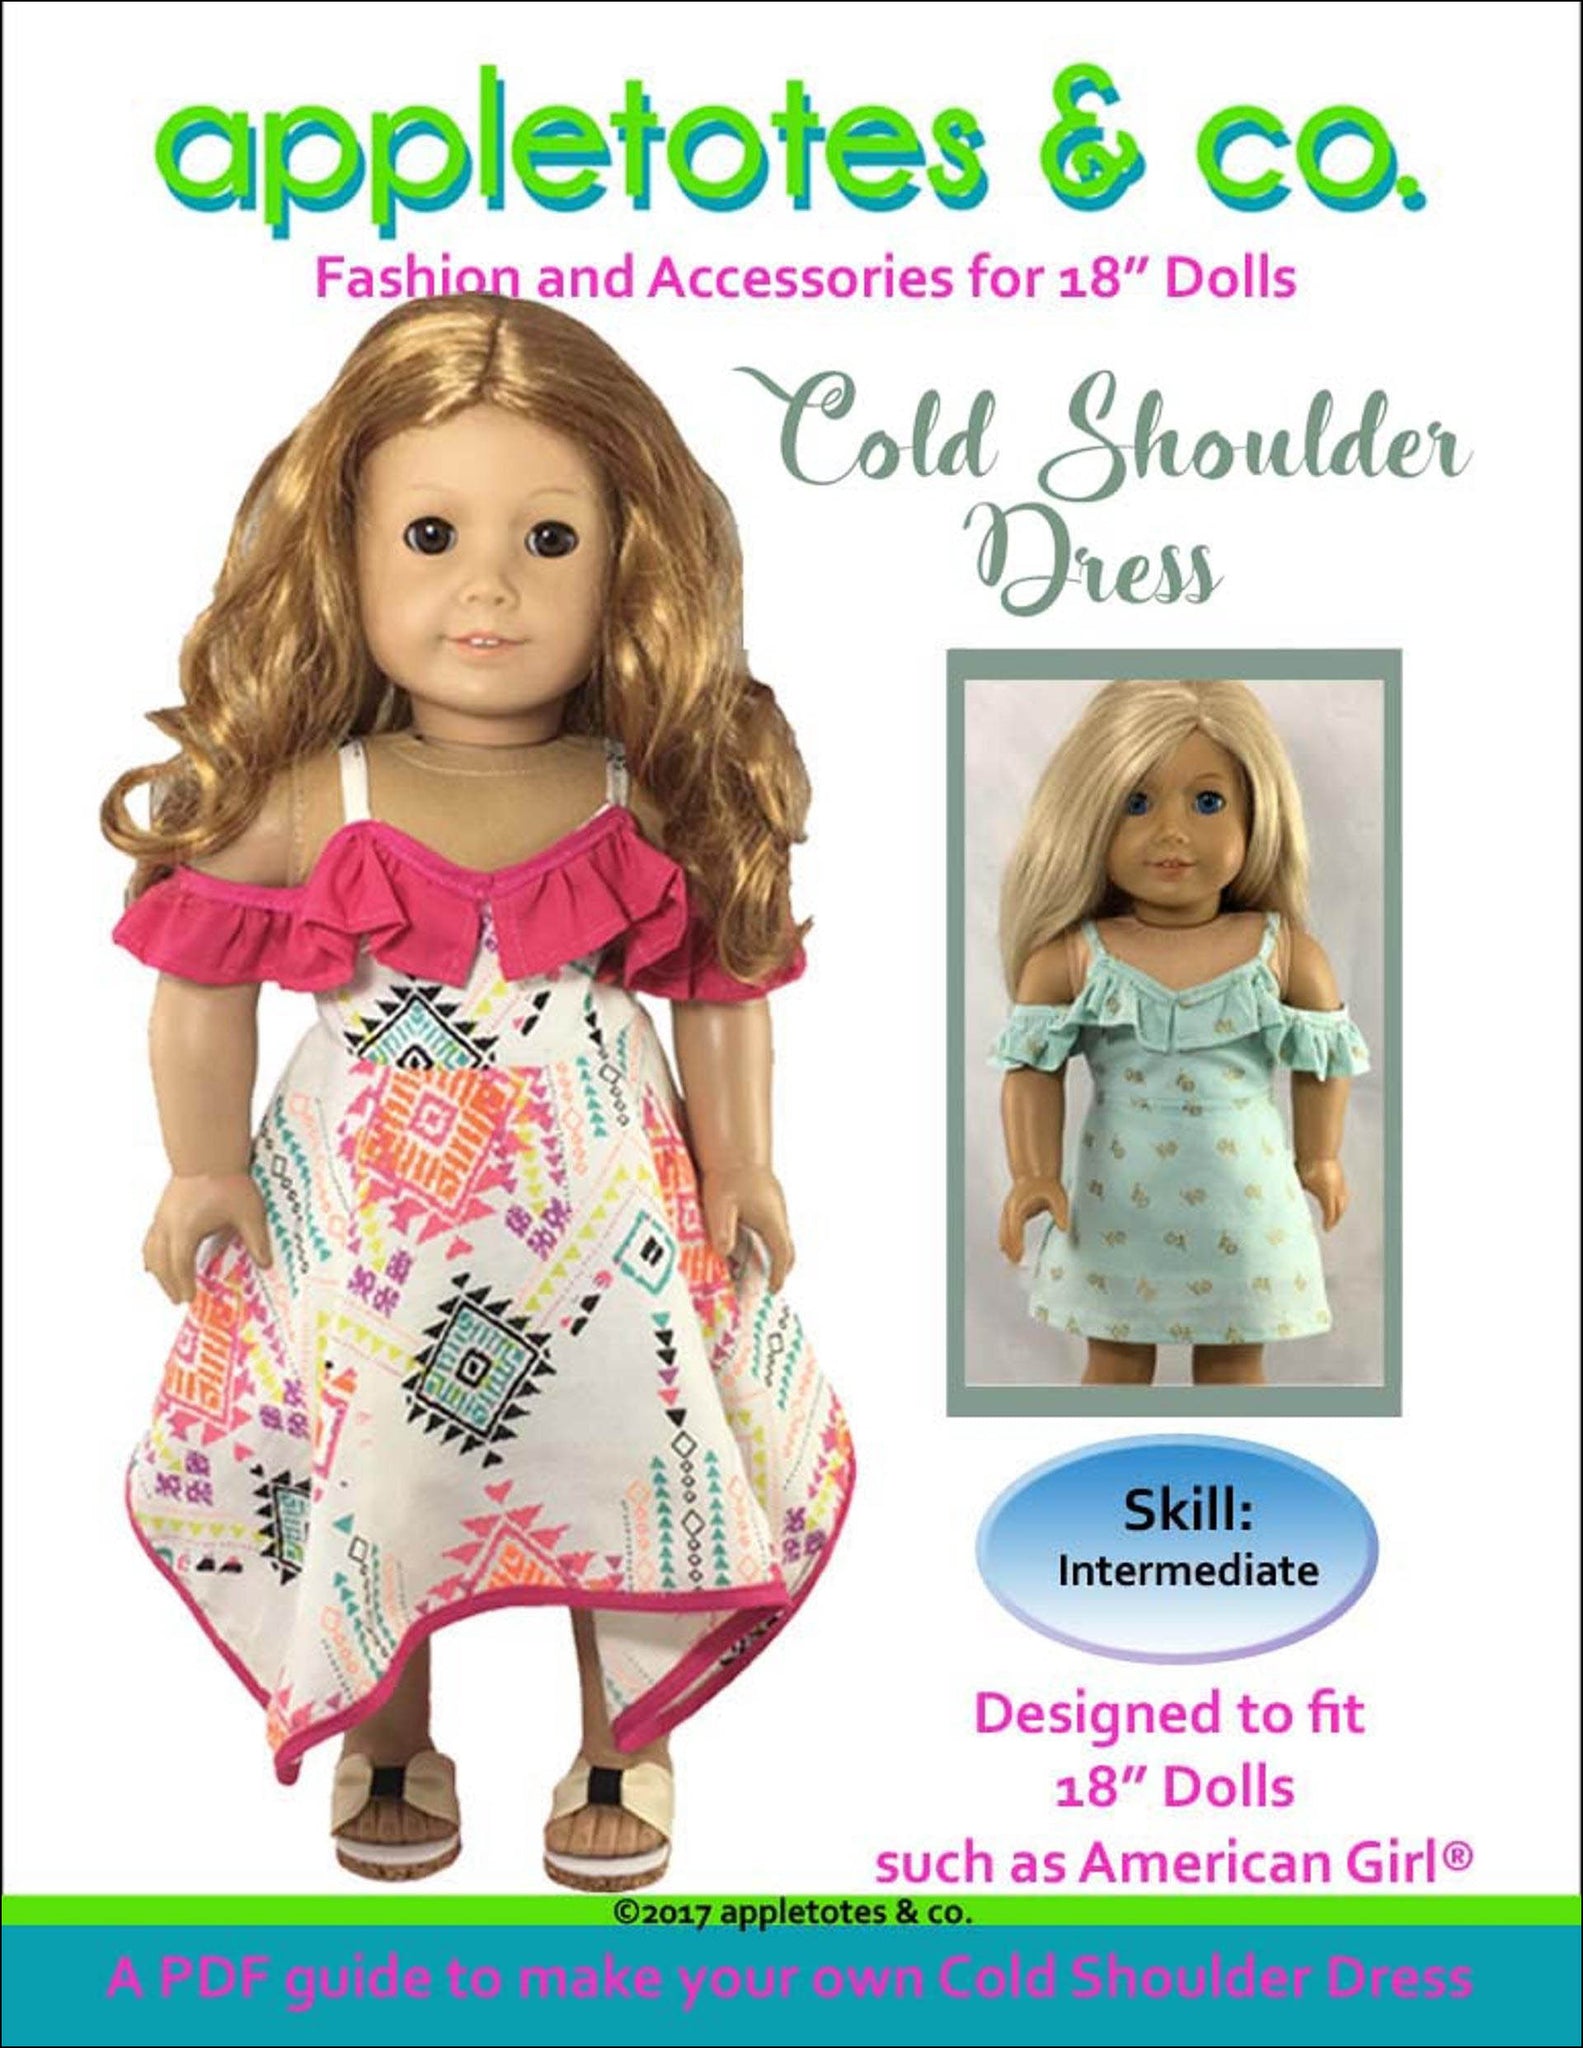 Cold Shoulder Dress Sewing Pattern for 18" Dolls